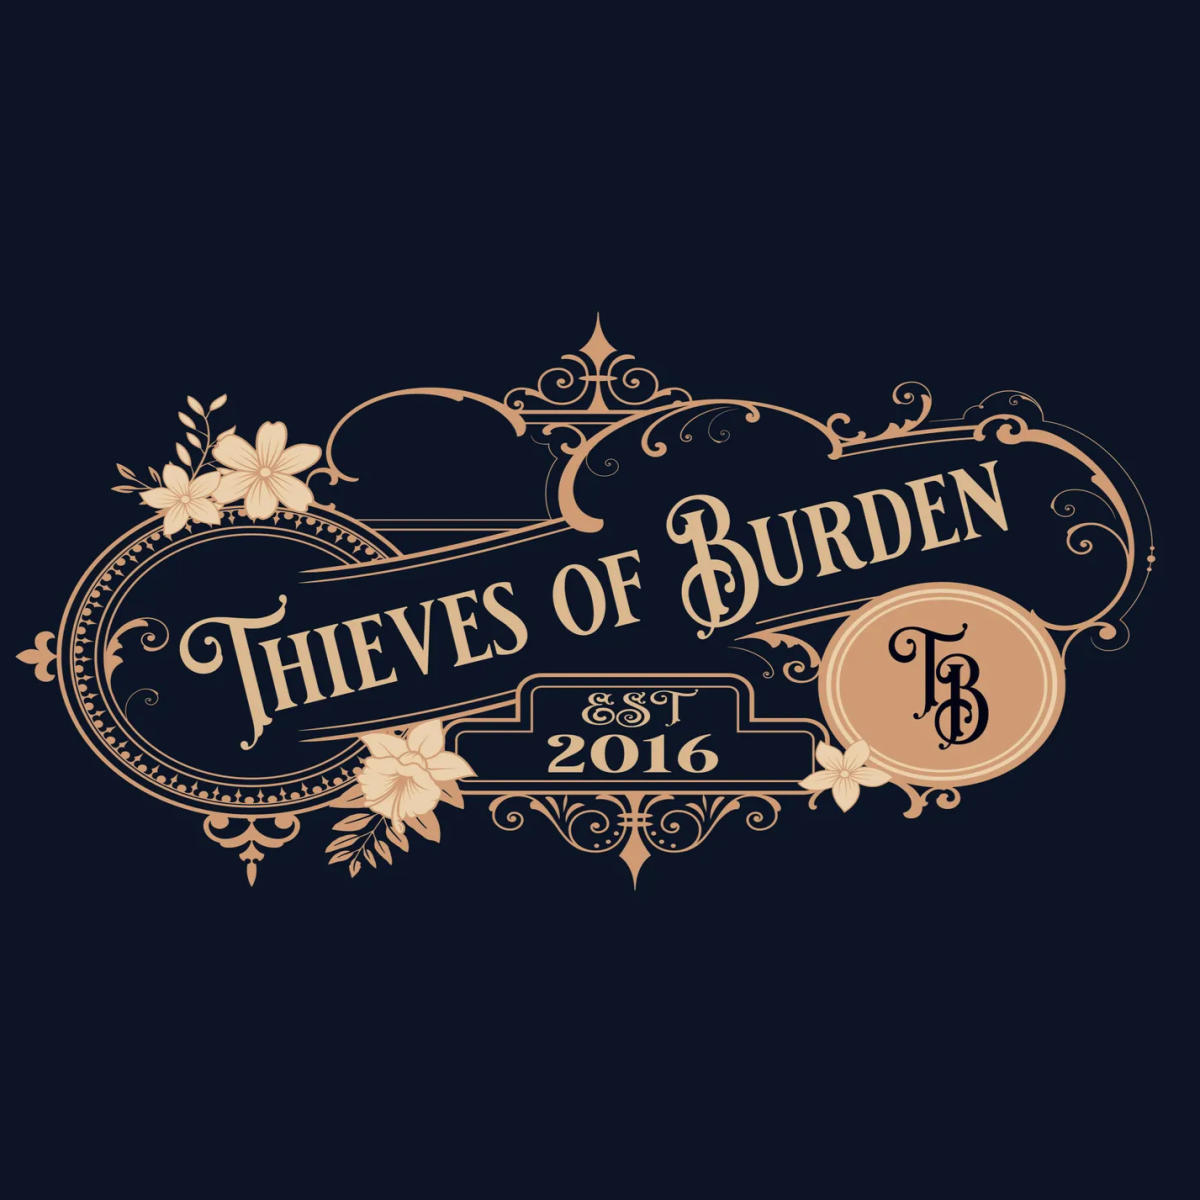 Thieves of Burden logo